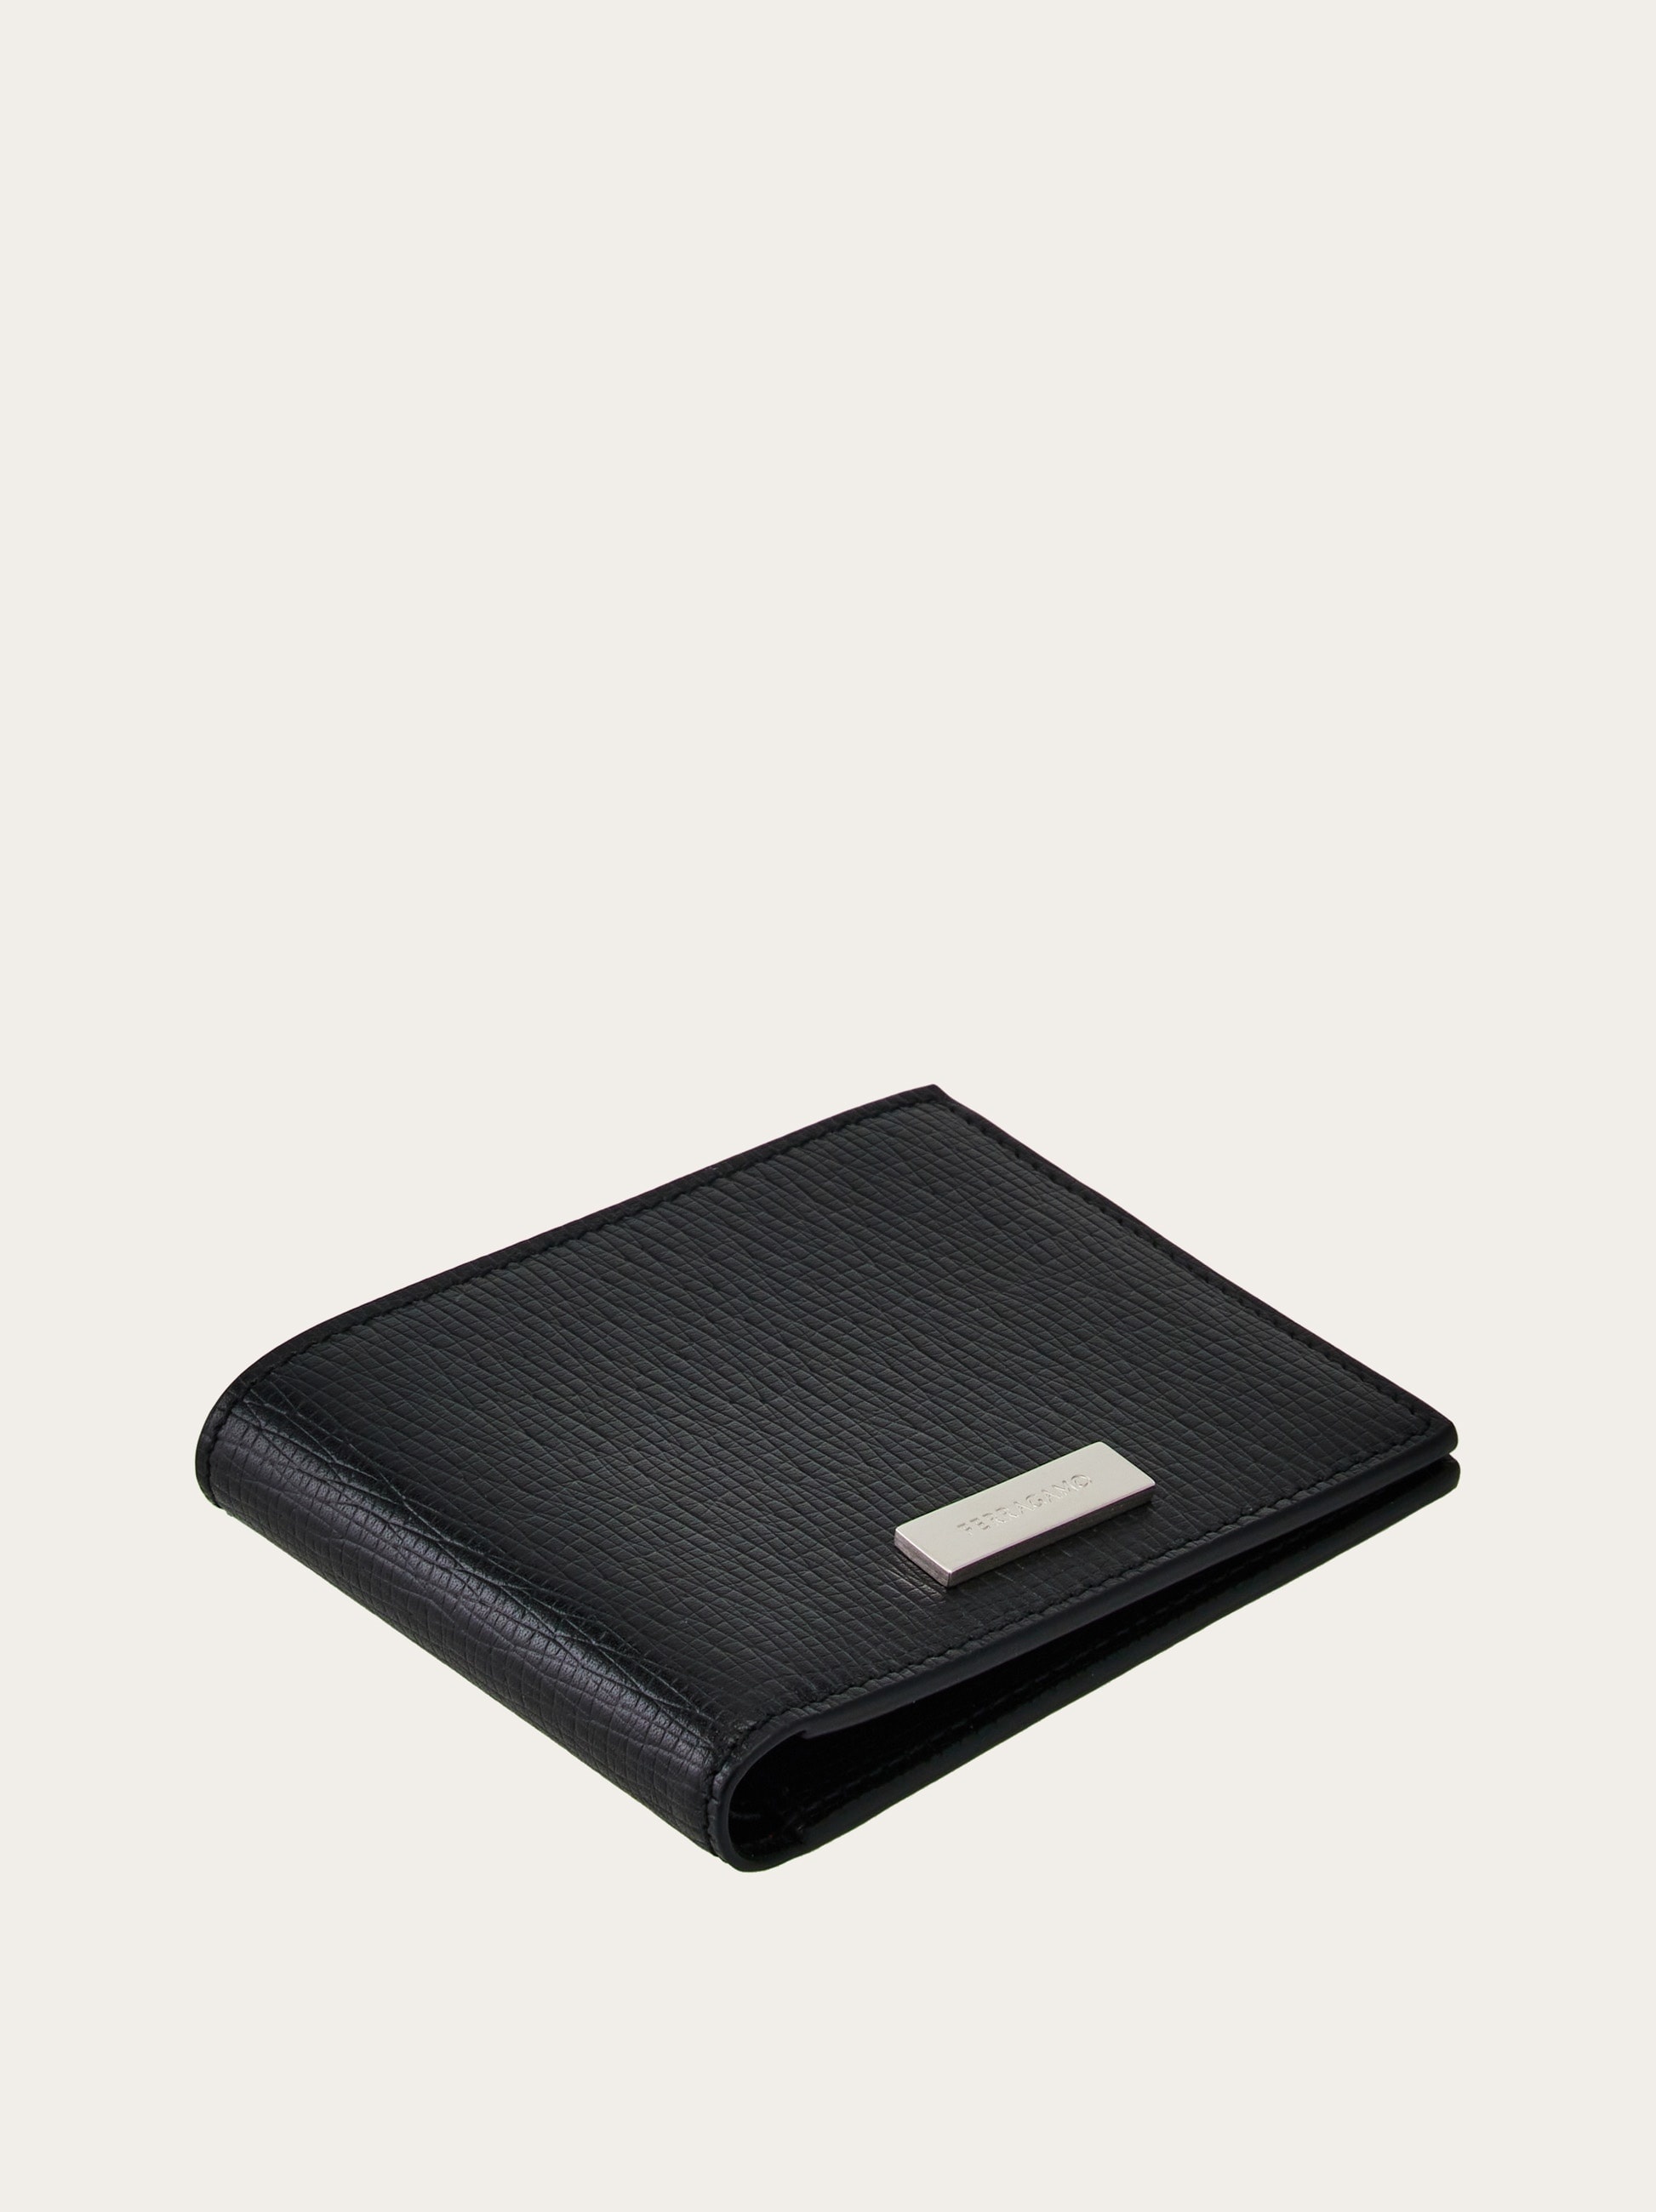 Wallet with custom metal plate - 2